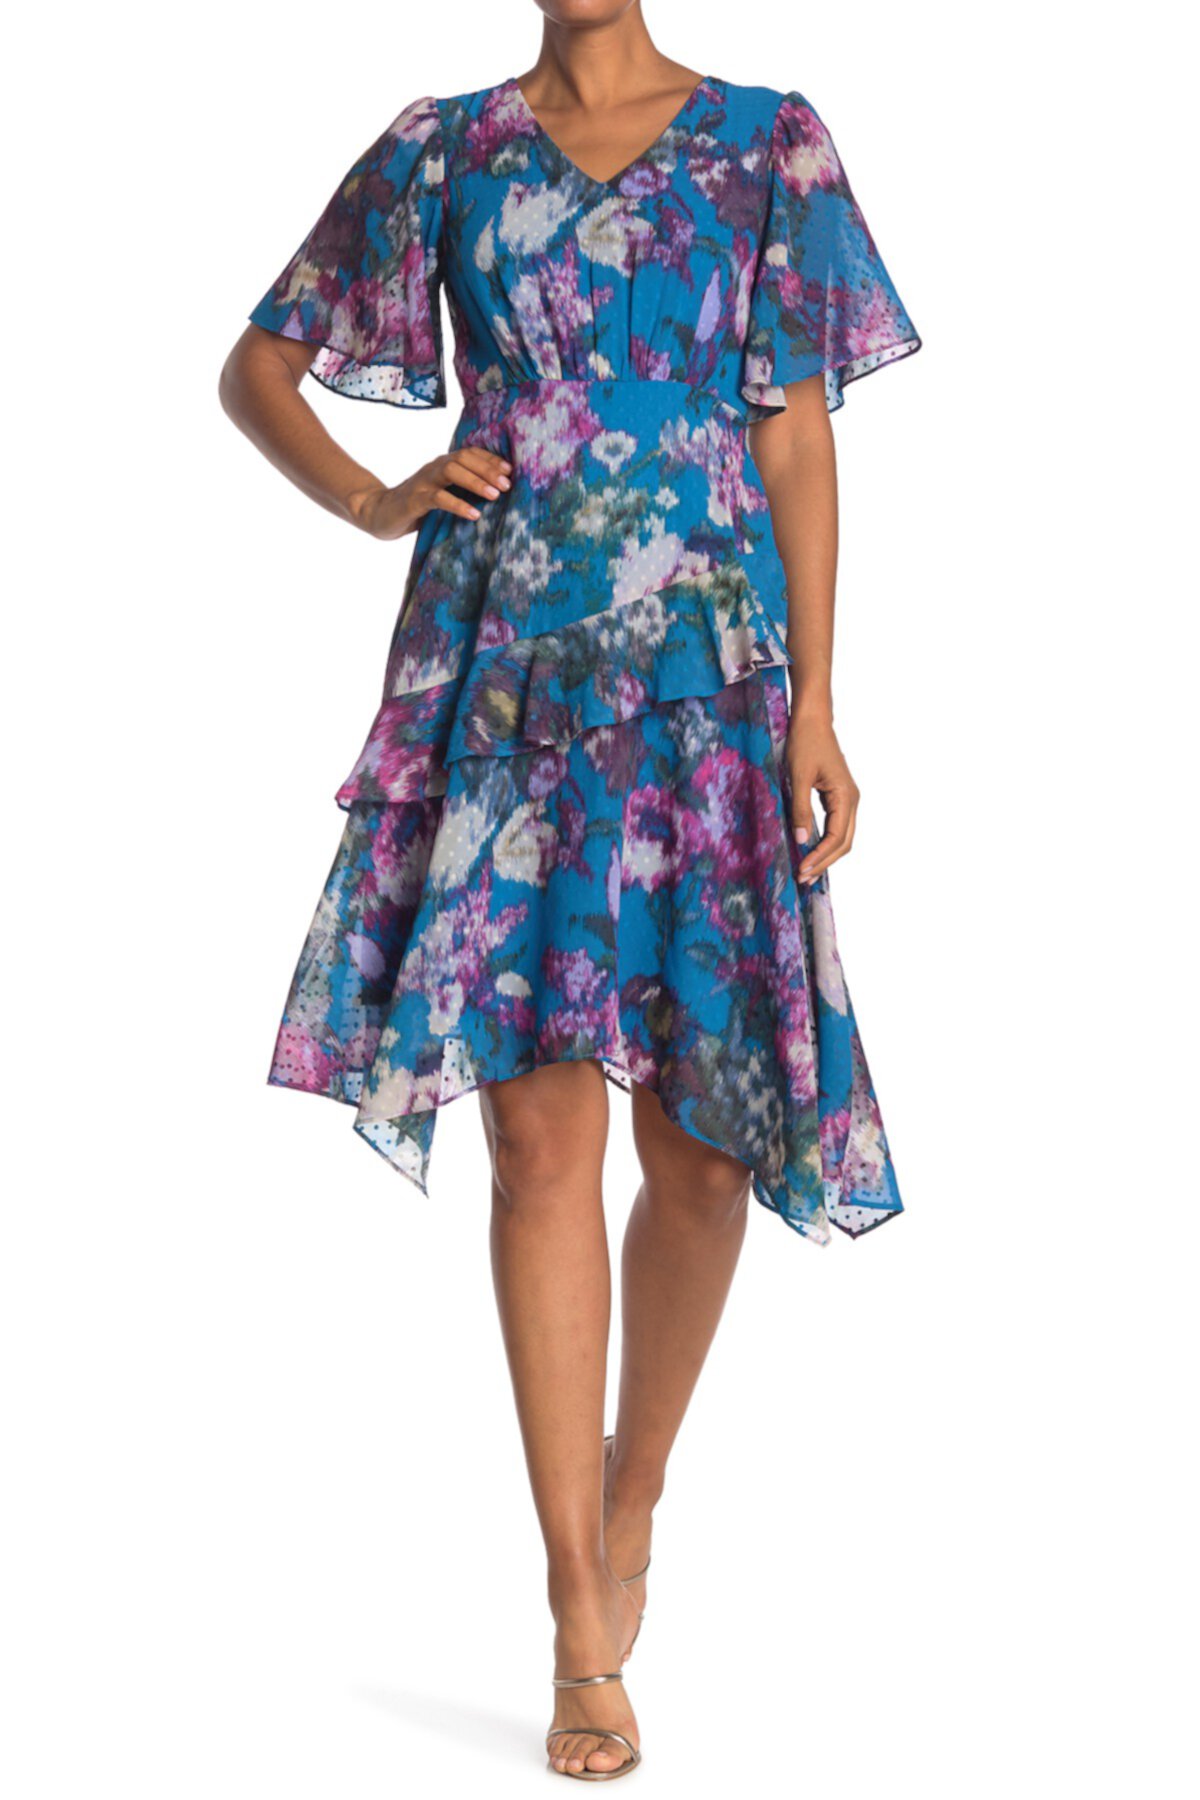 Мини-платье в горошек с короткими рукавами и цветочными оборками Gabby Skye